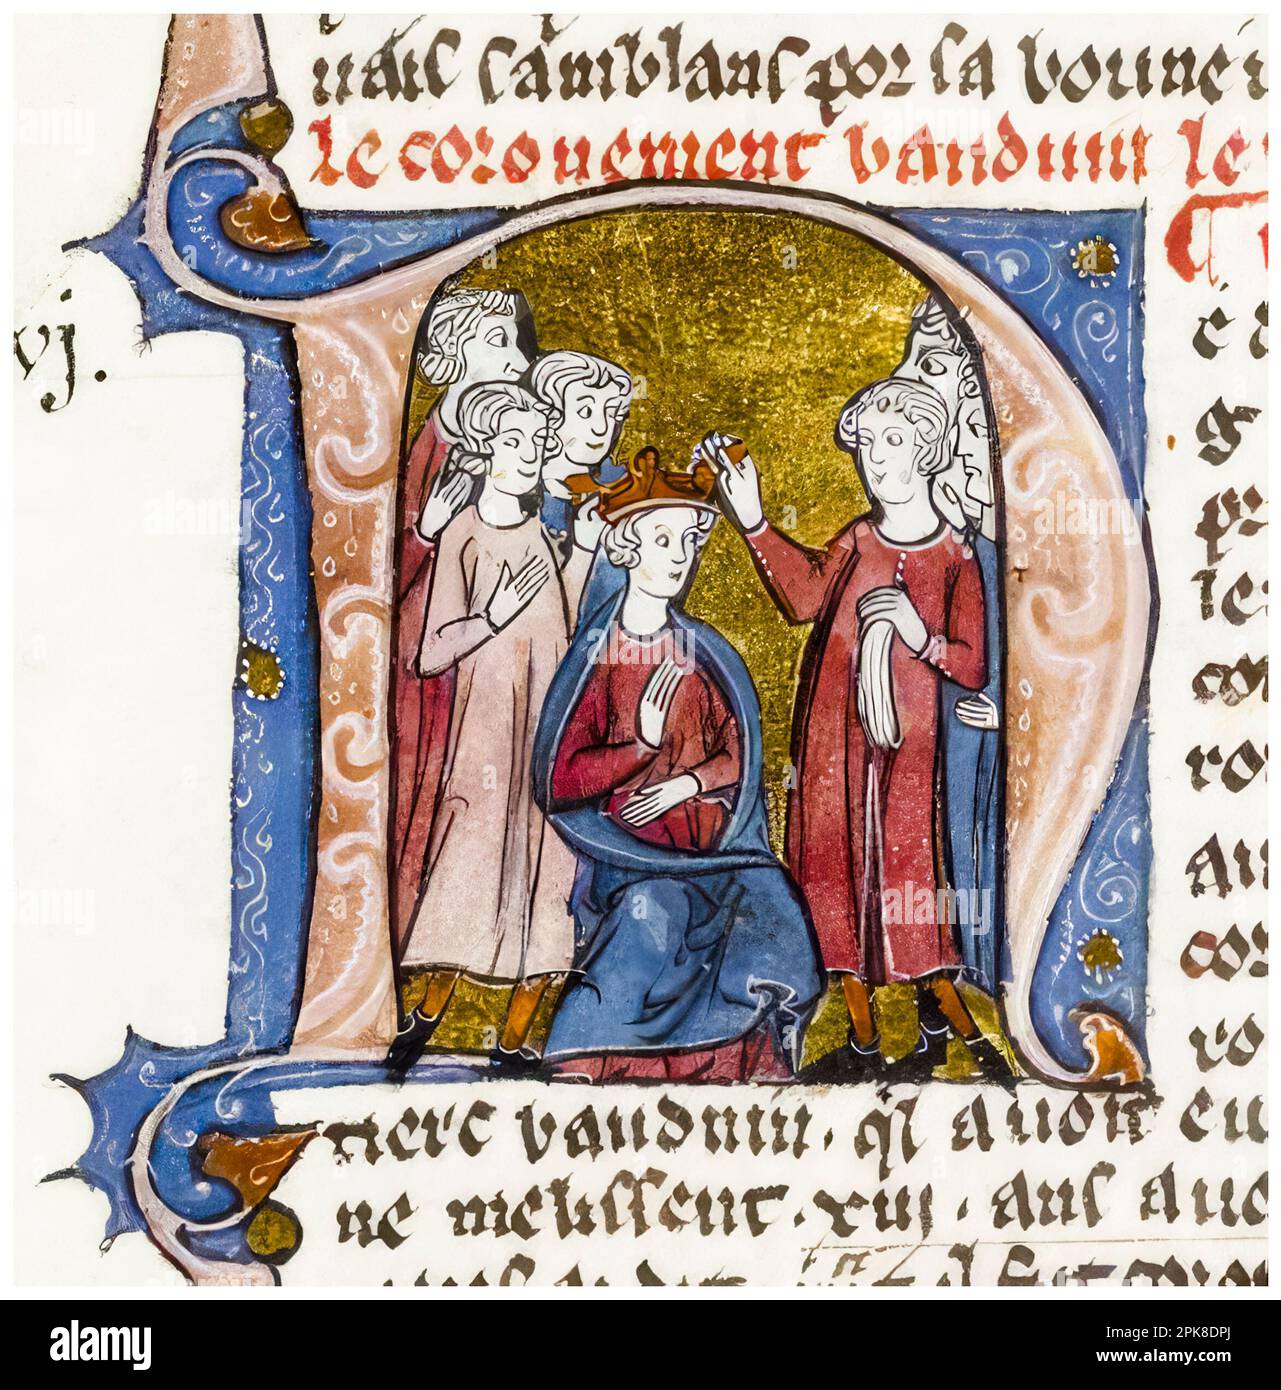 Incoronazione di Baldovino III (1129-1163), re di Gerusalemme (1143-1163), da parte di due laici, pittura manoscritta illuminata, intorno al 1295-1299 Foto Stock